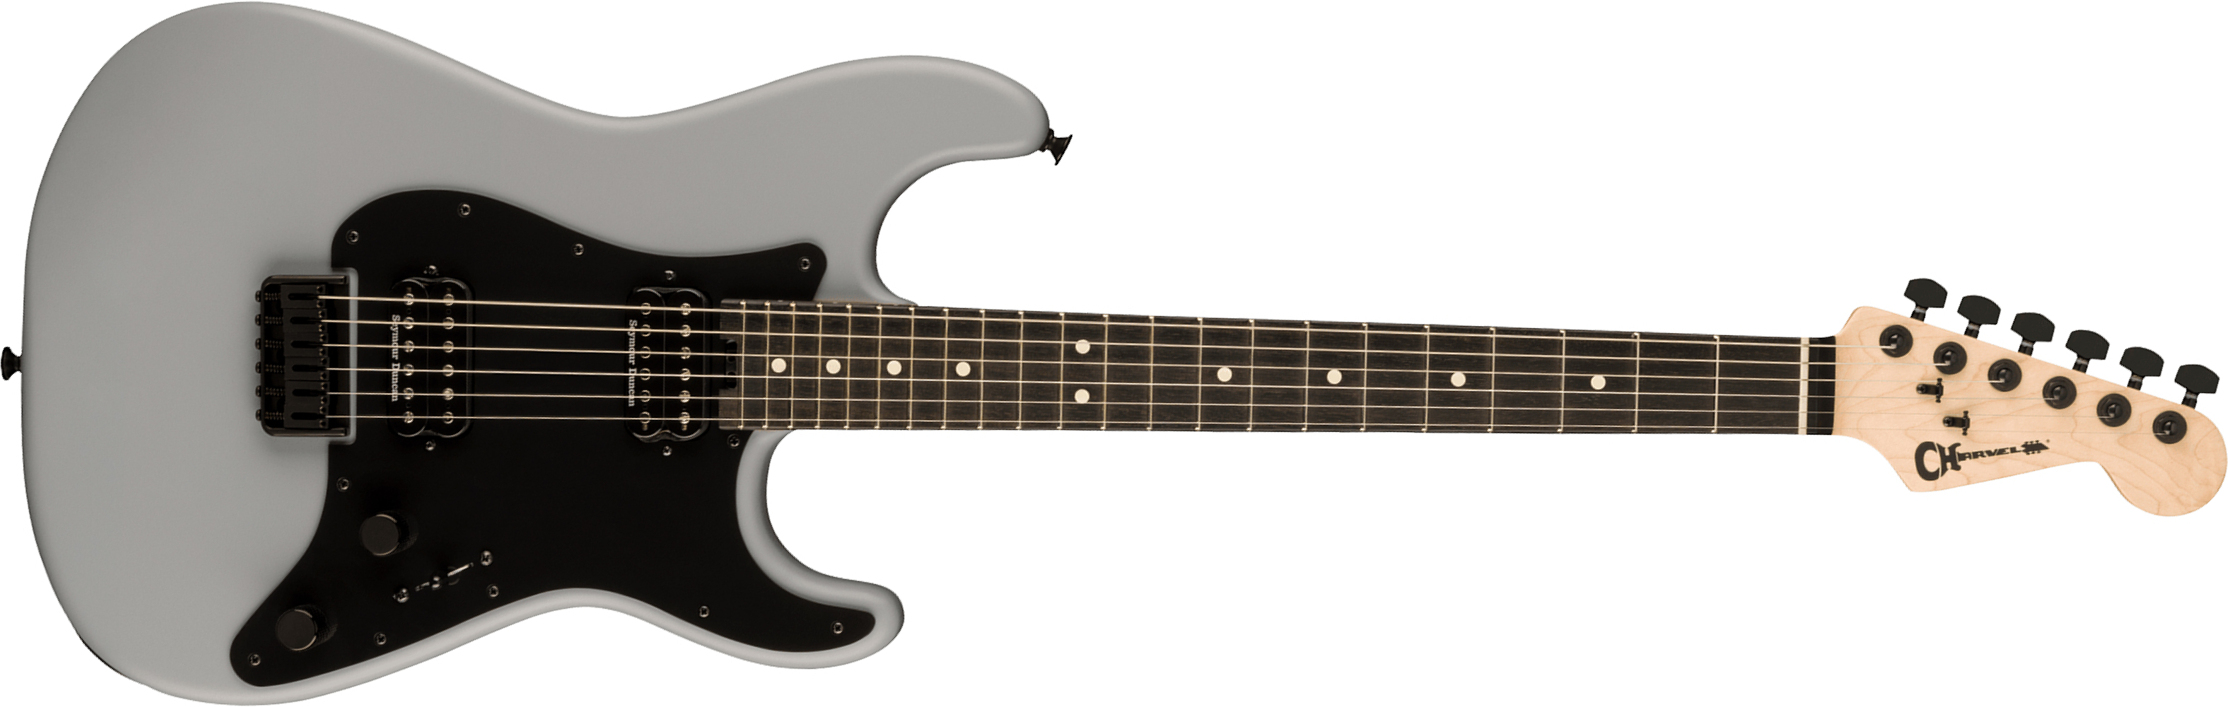 Charvel So-cal Style 1 Hh Ht E Pro-mod 2h Seymour Duncan Eb - Primer Gray - Guitare Électrique Forme Str - Main picture